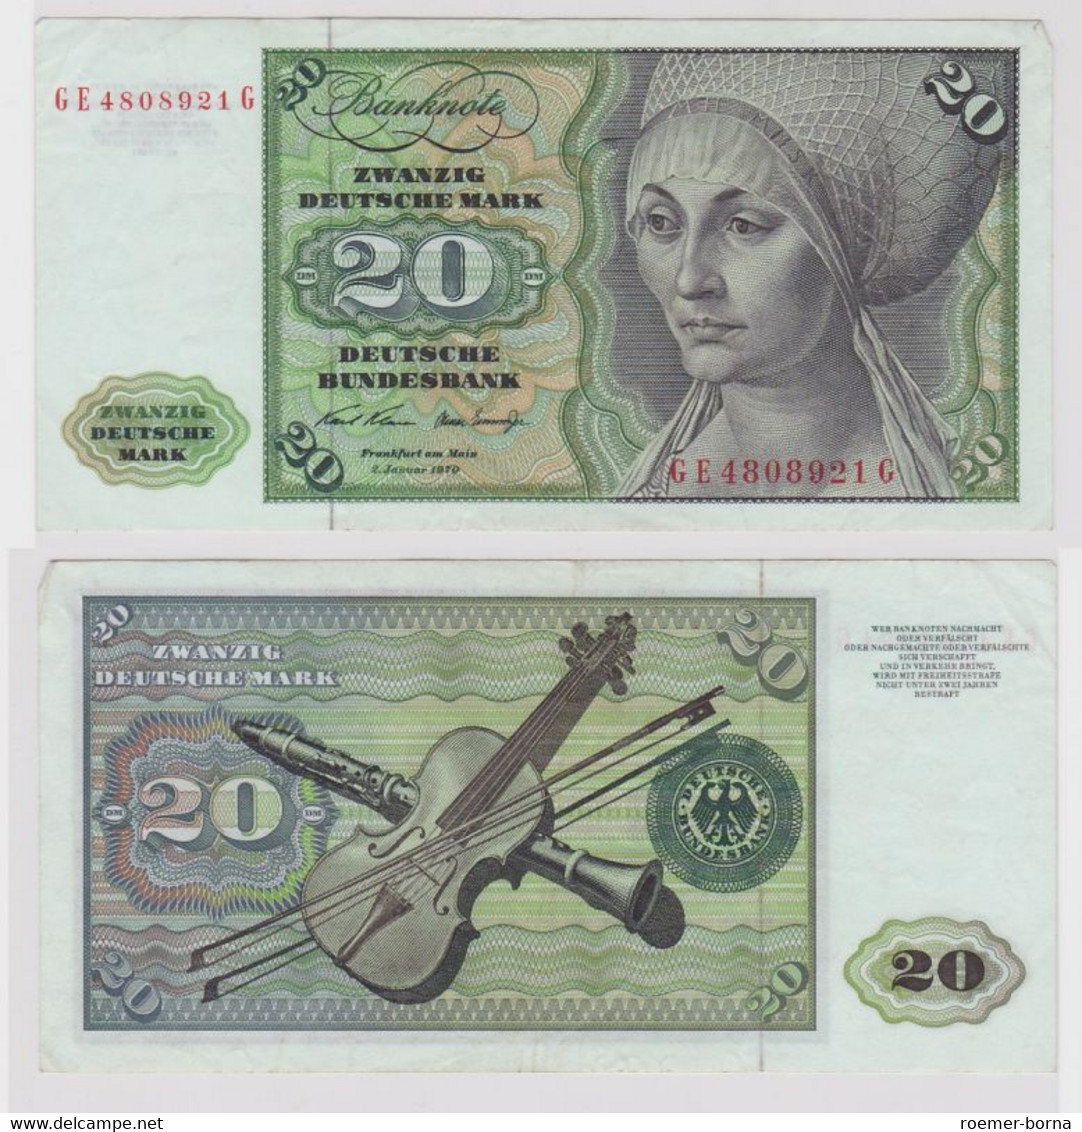 T148568 Banknote 20 DM Deutsche Mark Ro. 271b Schein 2.Jan. 1970 KN GE 4808921 G - 20 DM